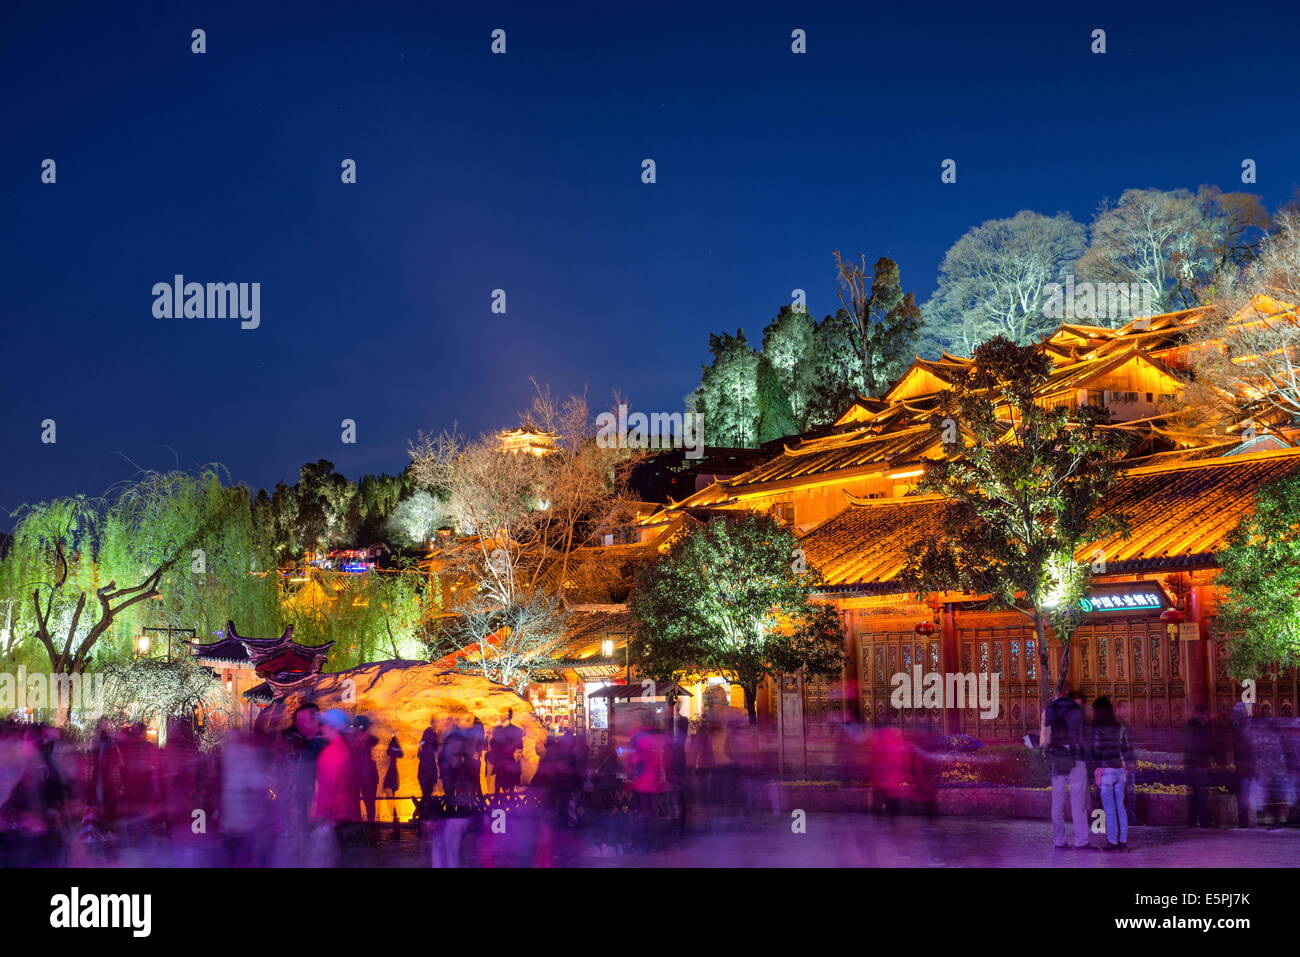 Lumineux et coloré, l'architecture traditionnelle des arbres dans la vieille ville de Lijiang, Site de l'UNESCO, la province du Yunnan, Chine Banque D'Images